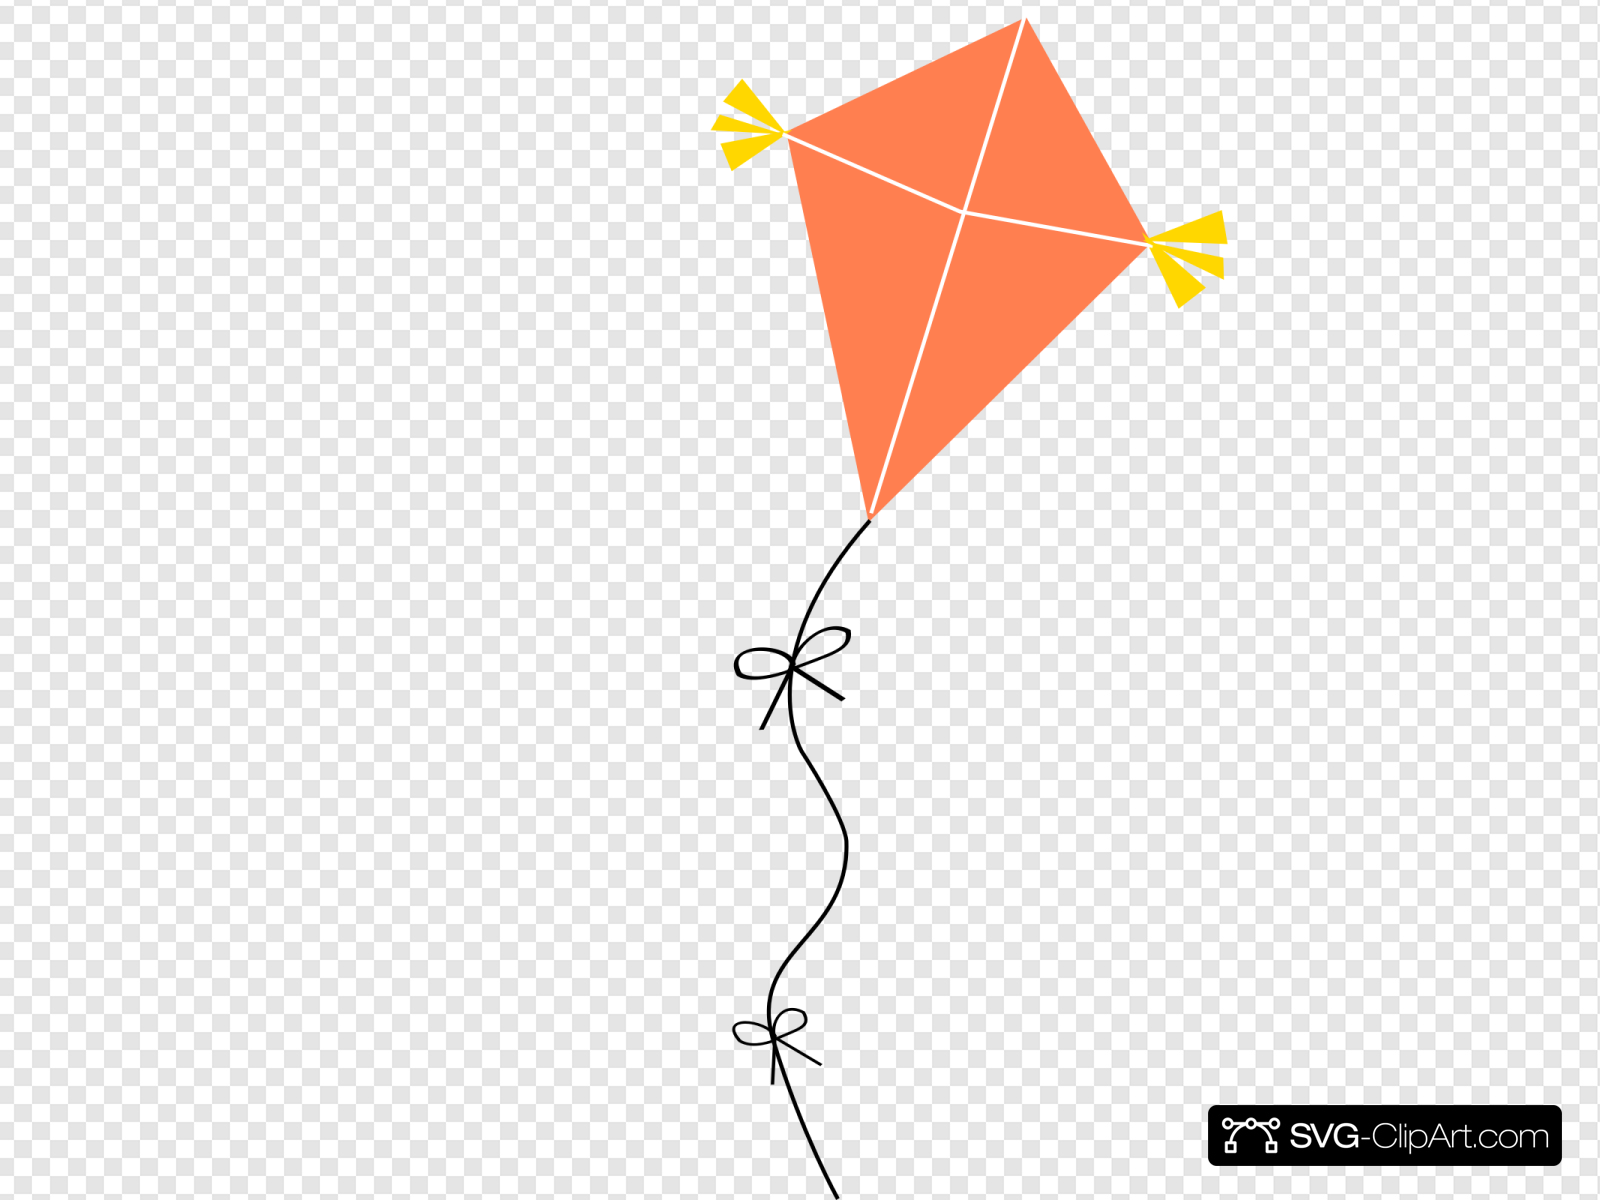 Orange kite clip.